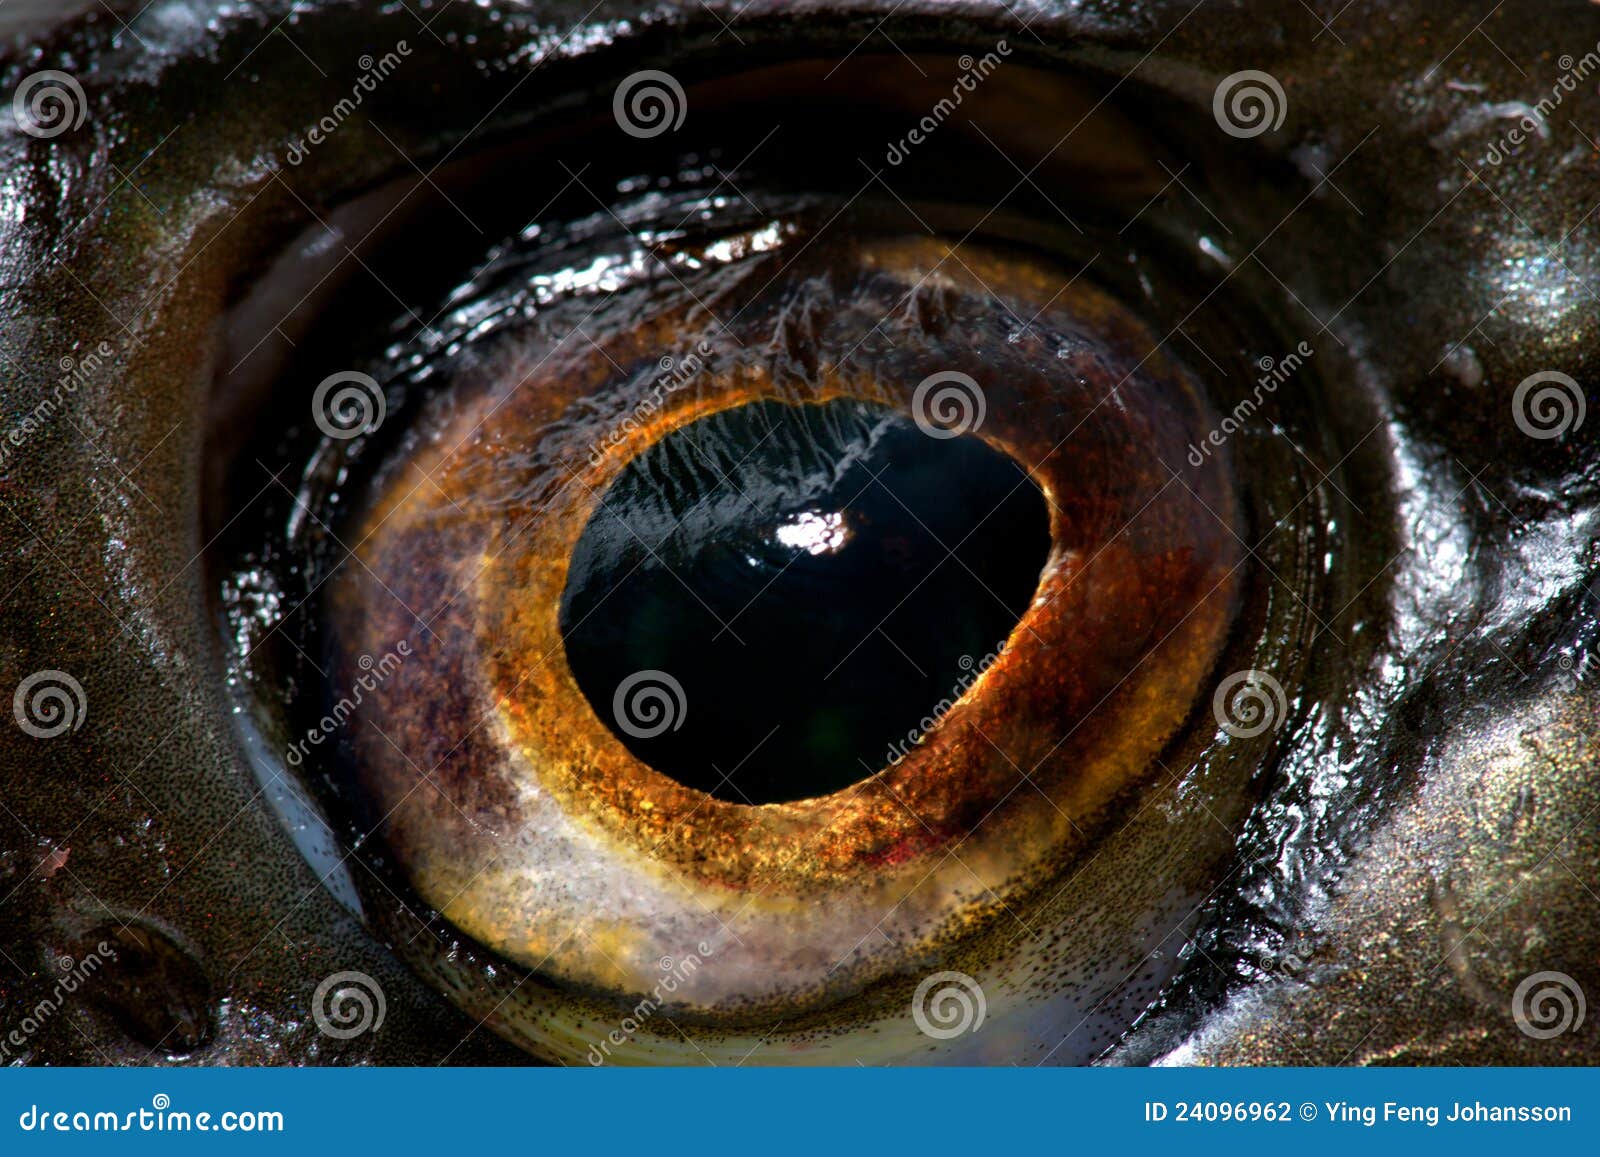 鱼眼睛四色鱼眼幻彩彩色鱼眼仿真鱼眼3D鱼眼滴塑眼（风冰火土）-阿里巴巴